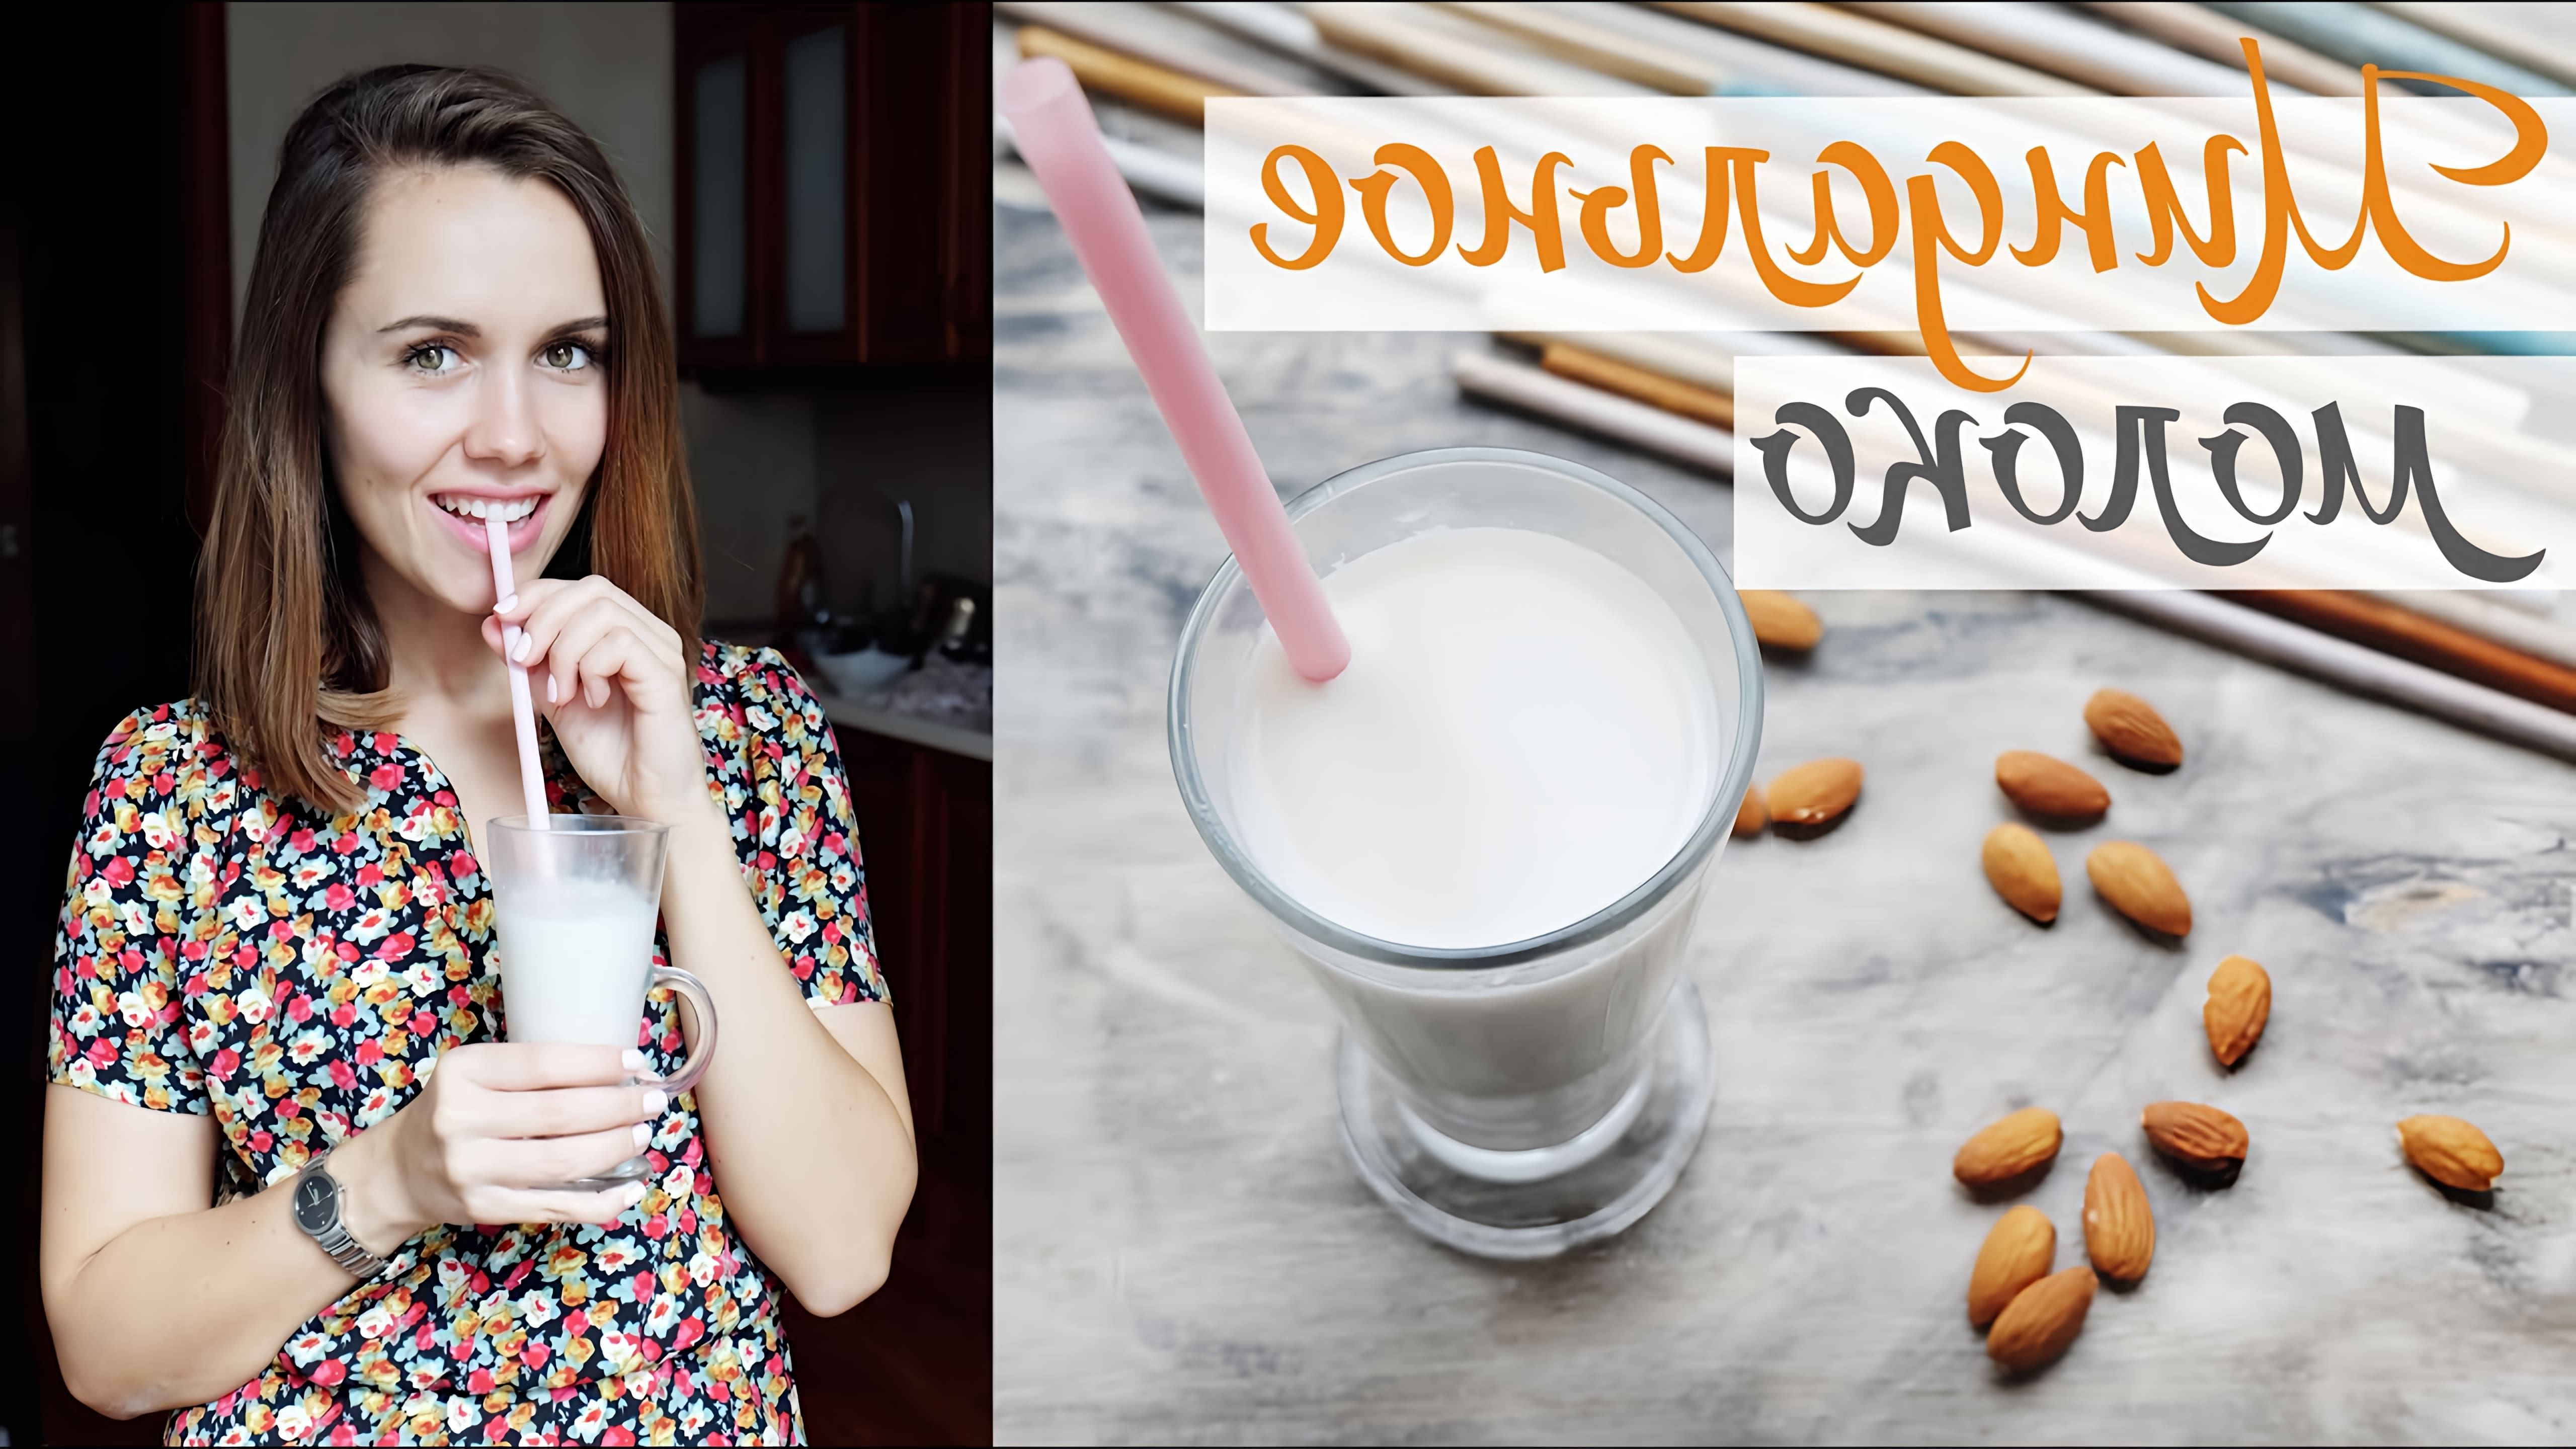 В этом видео демонстрируется простой и вкусный рецепт приготовления миндального молока в домашних условиях